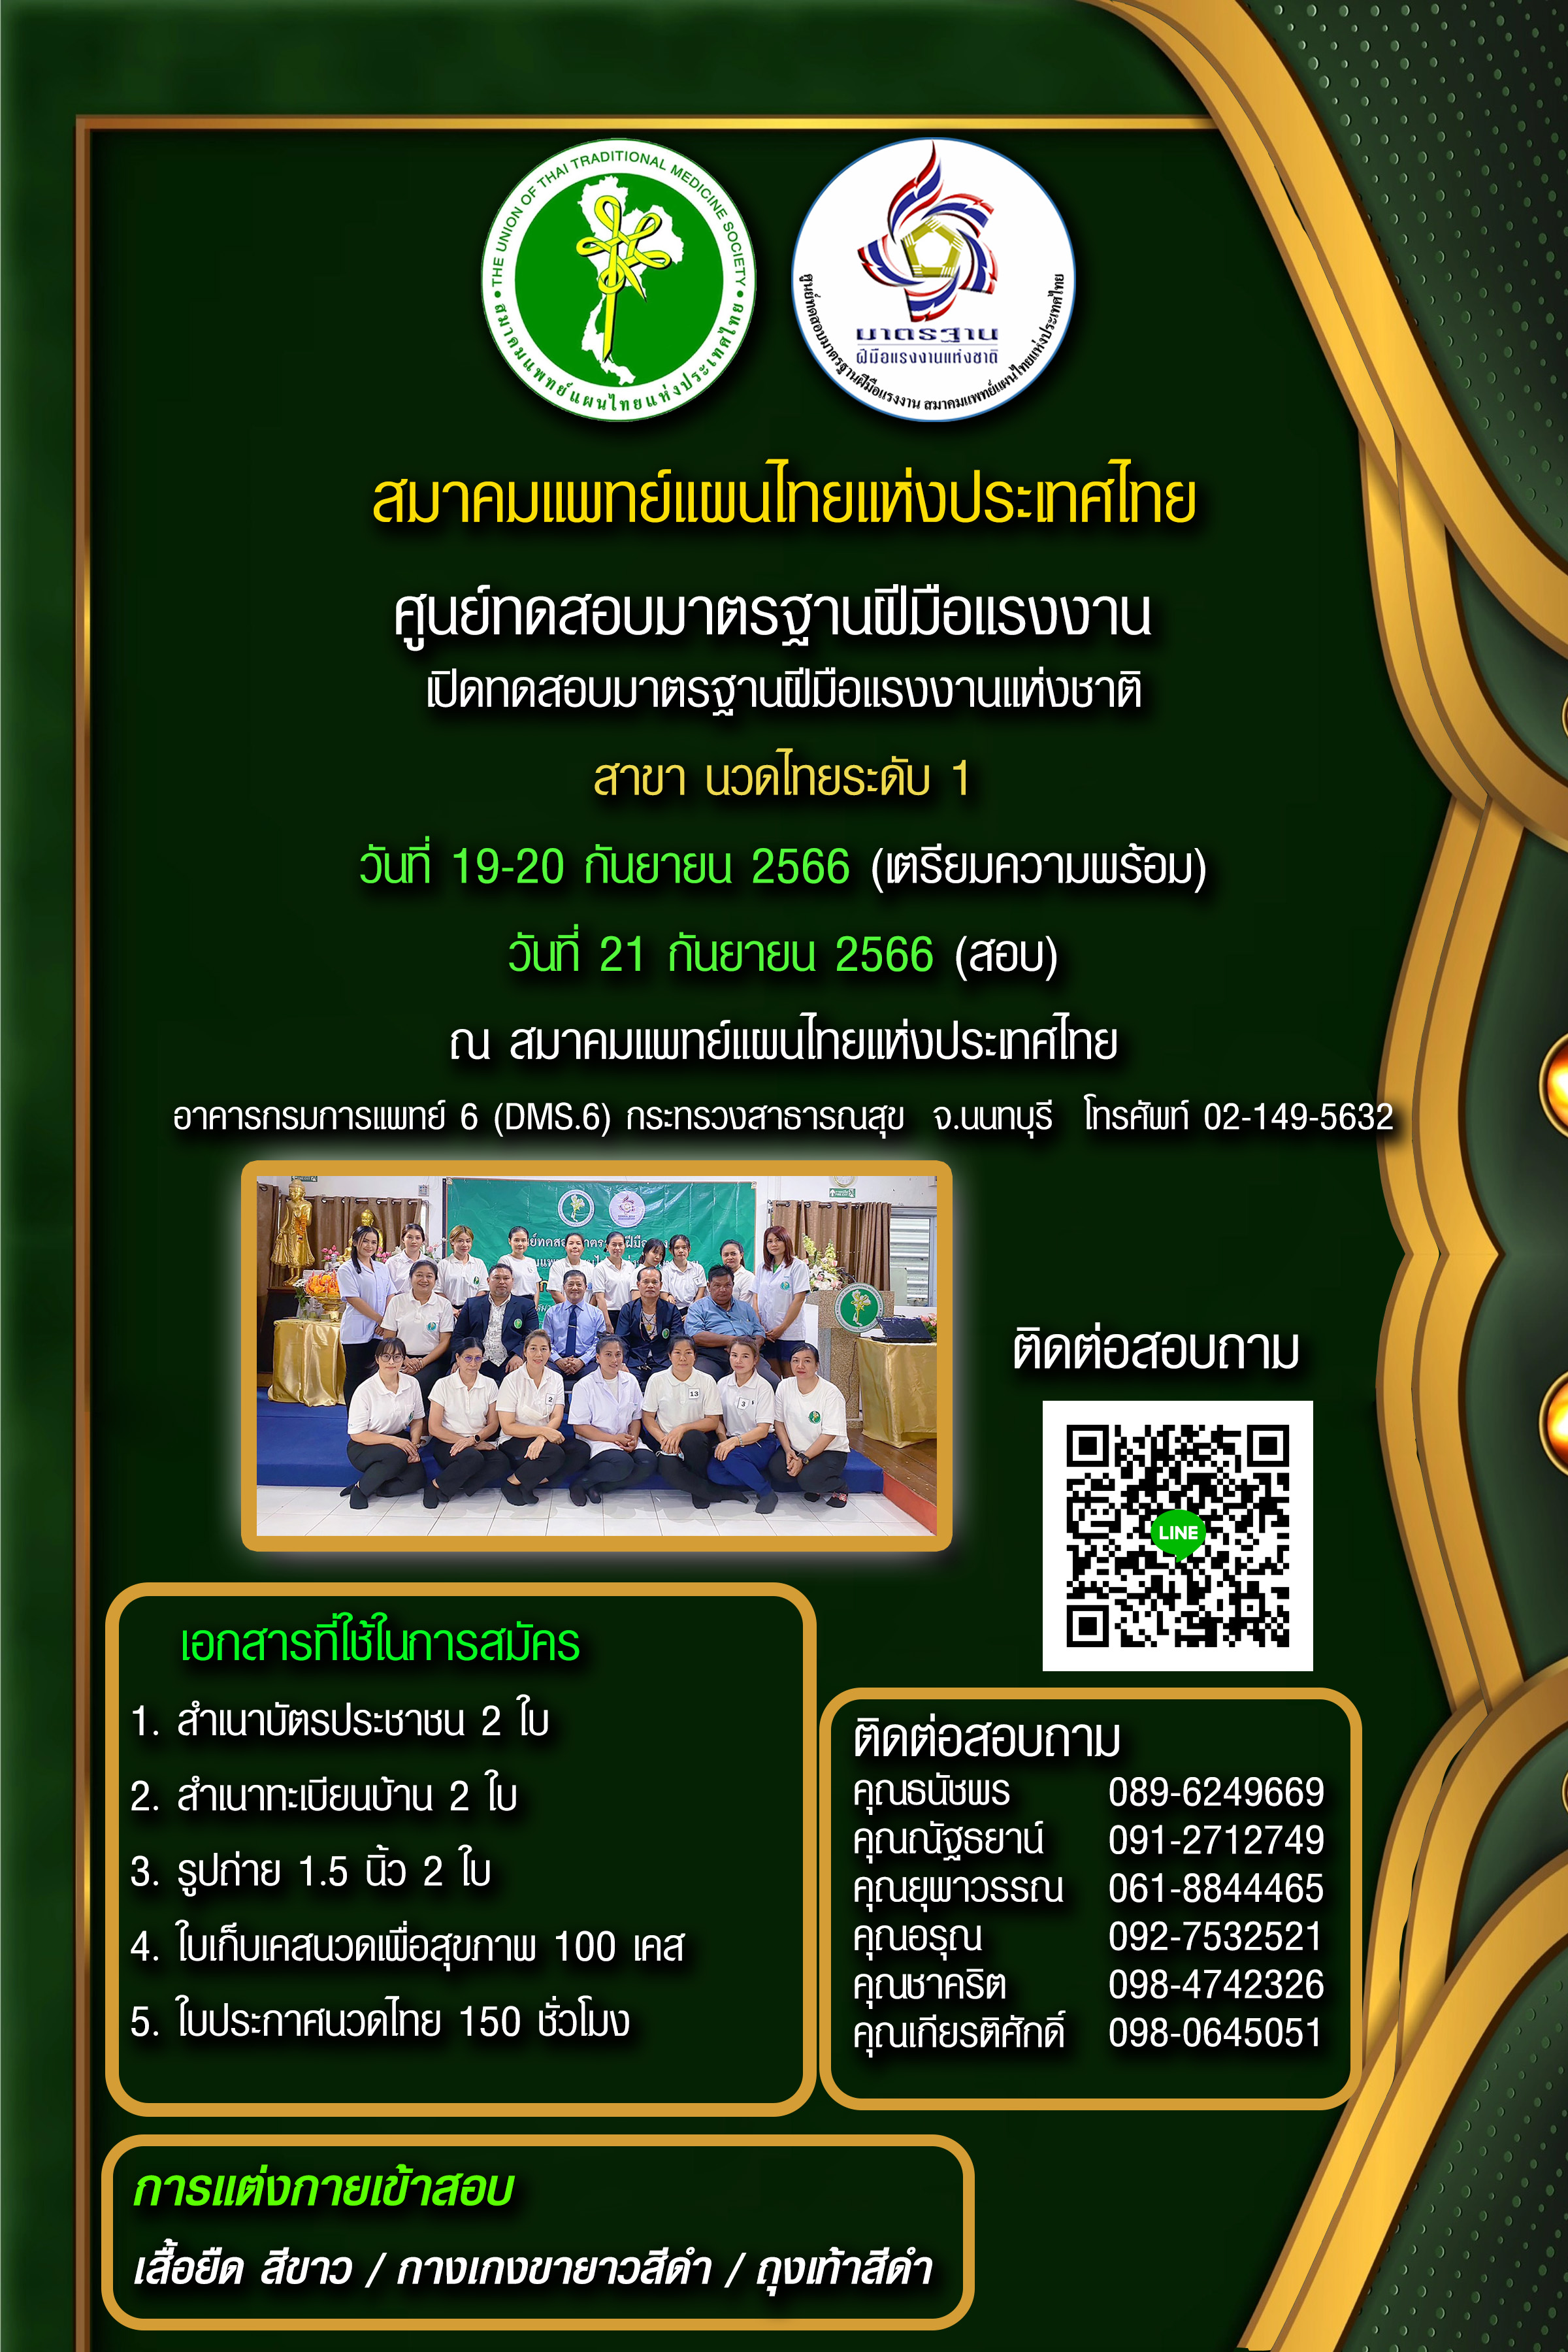 เปิดทดสอบฝีมือแรงงานแห่งชาติ  สาขา นวดไทย ระดับ 1